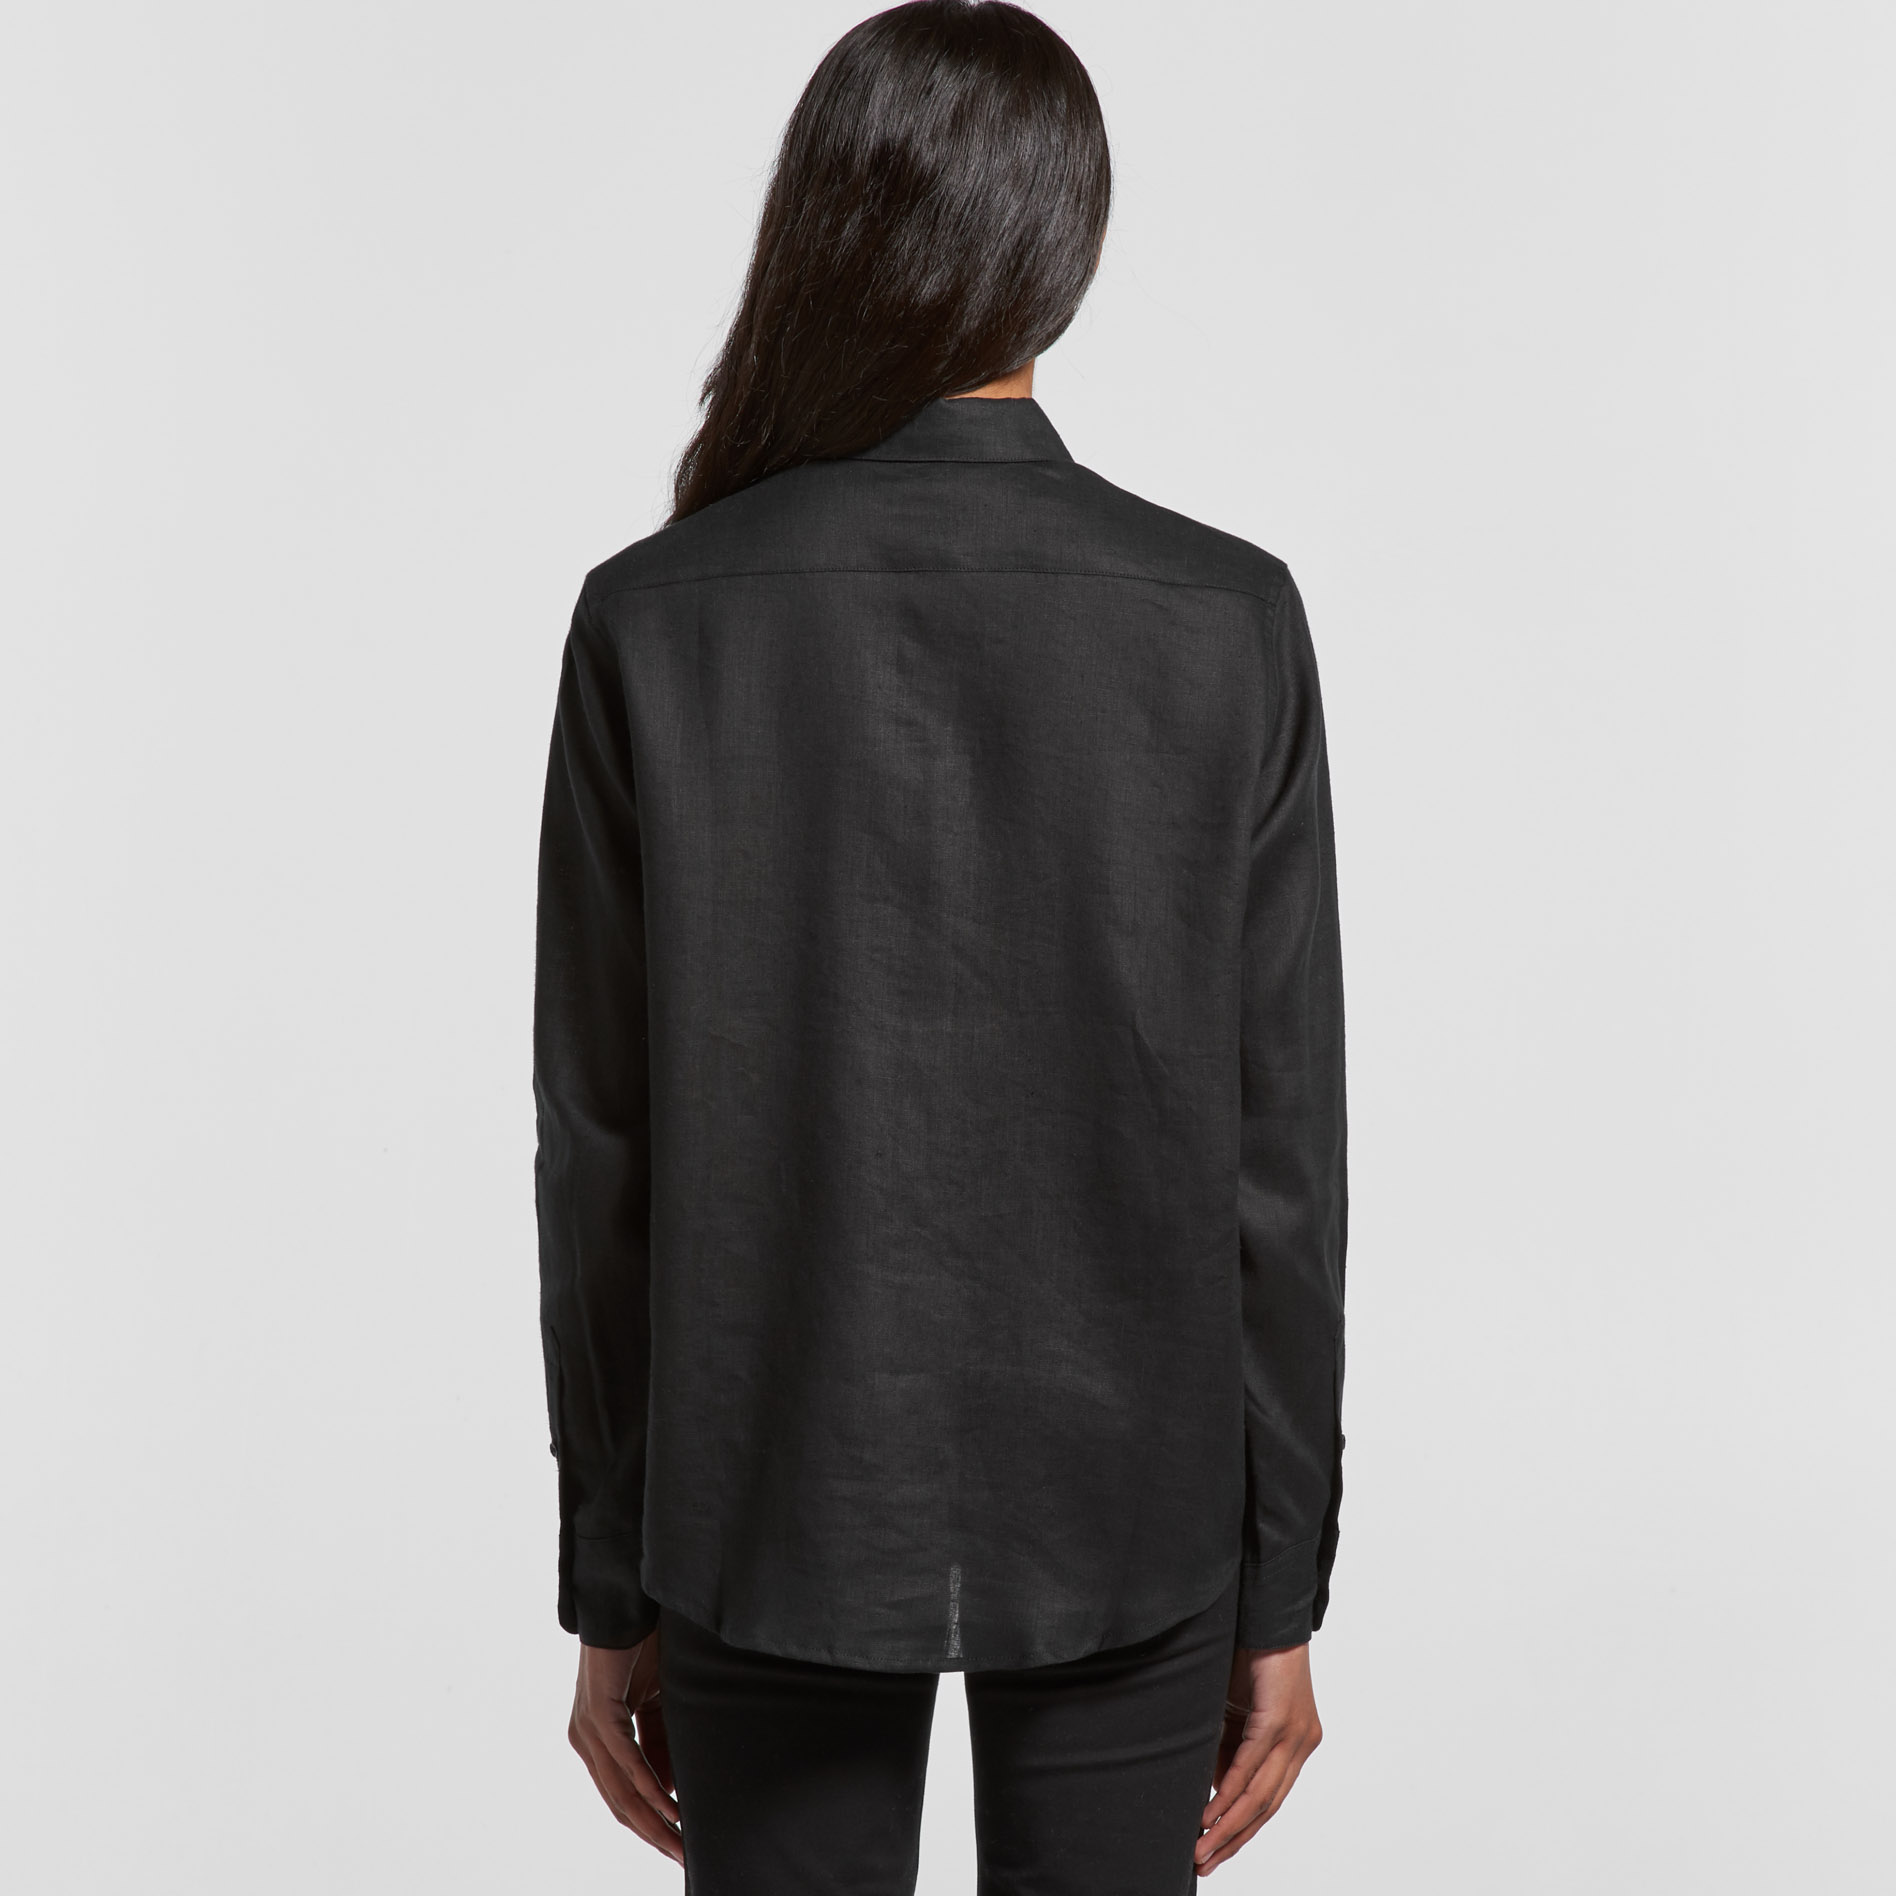 Womens Linen Shirt | Business Work Shirts | Womens Long Sleeve Black ...